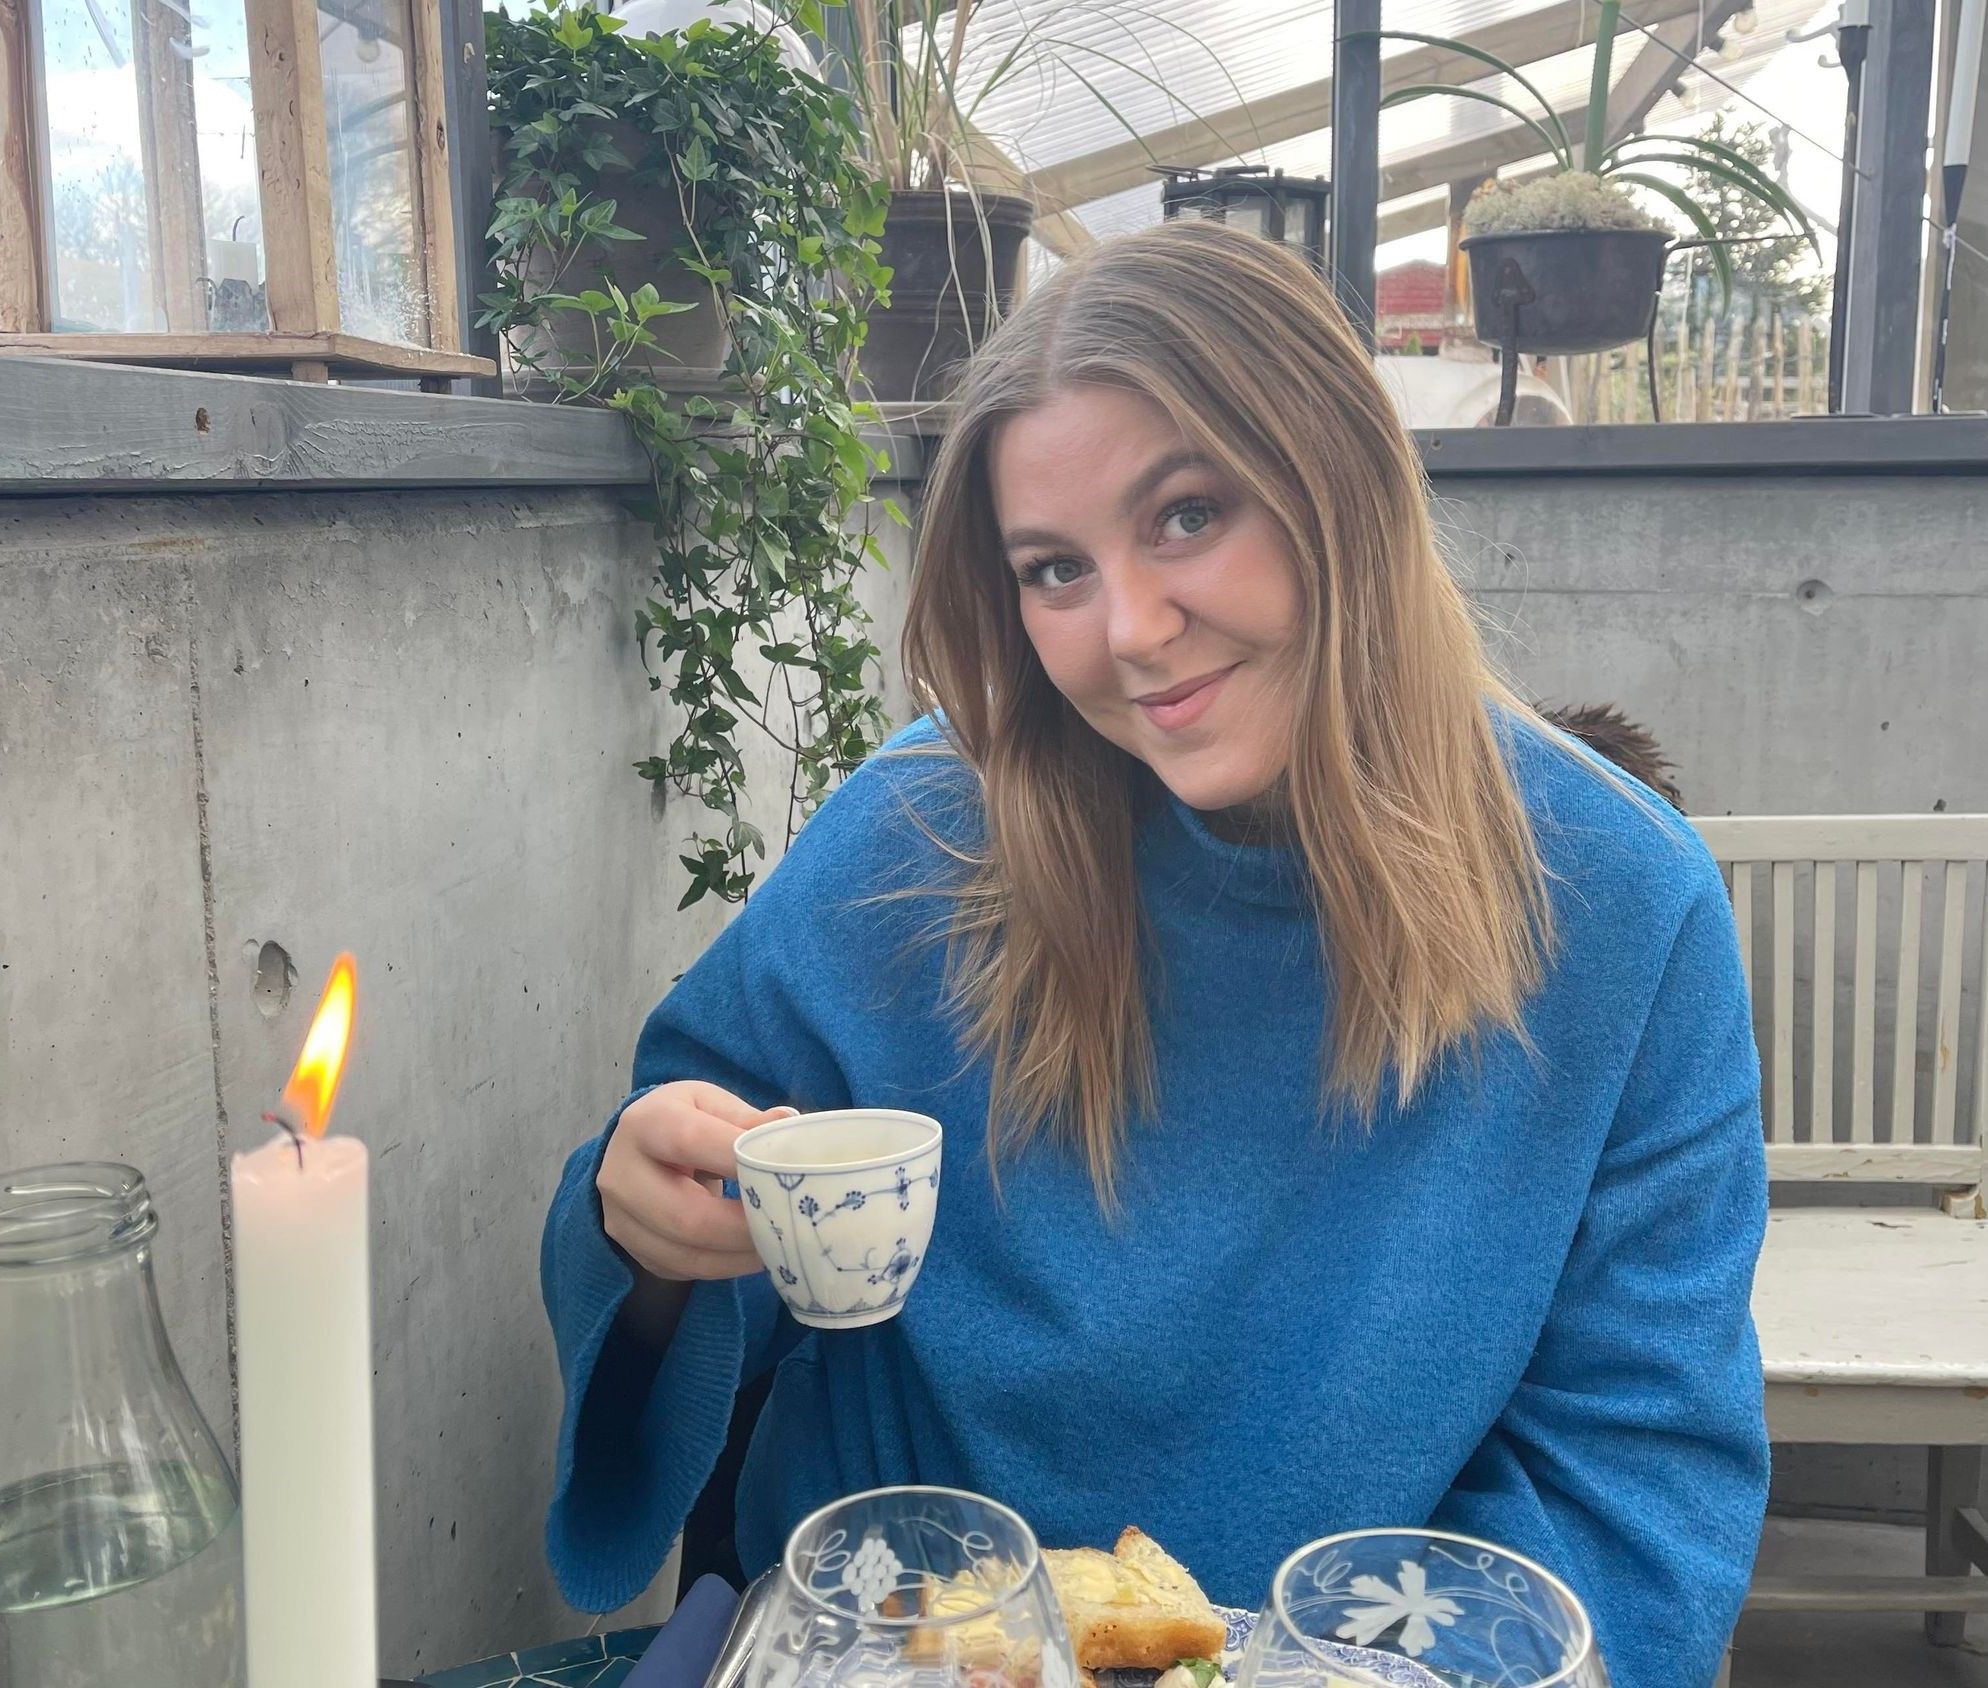 Bilde av Caroline Madsen. Kvinne med blondt hår, som smiler mot kamera. Hun har på seg en blå genser og holder en kopp. Hun sitter ved noe som ser ut som et cafébord, med mat og lys på bordet. 